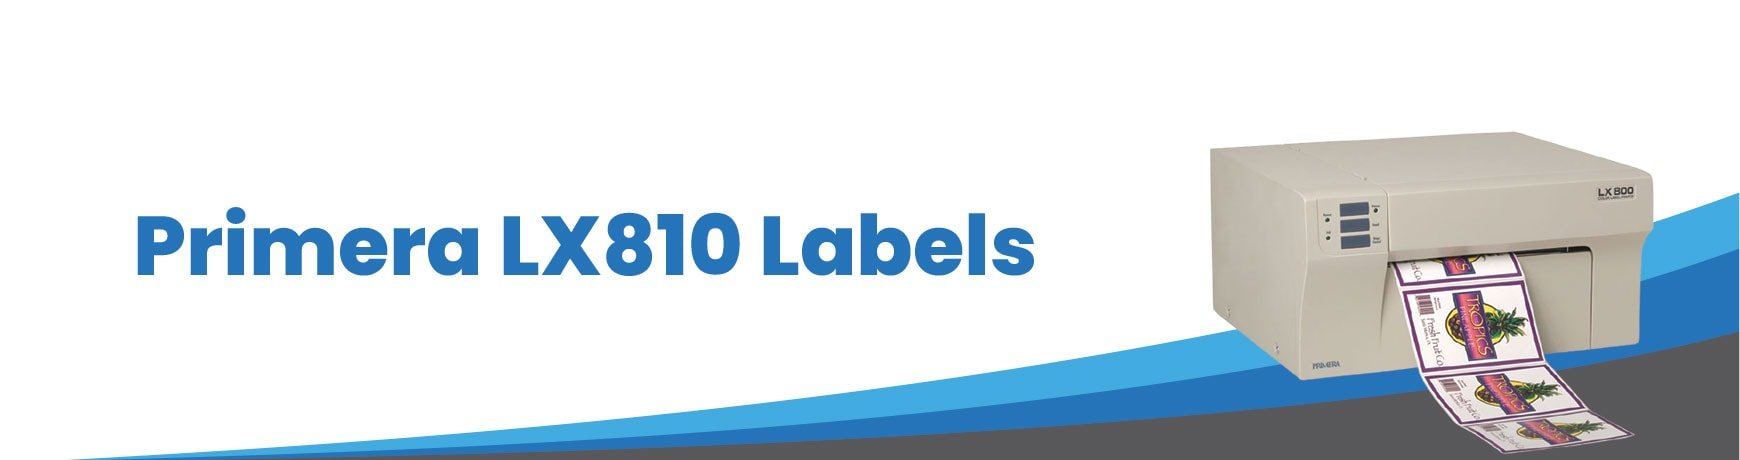 Primera LX810 Labels